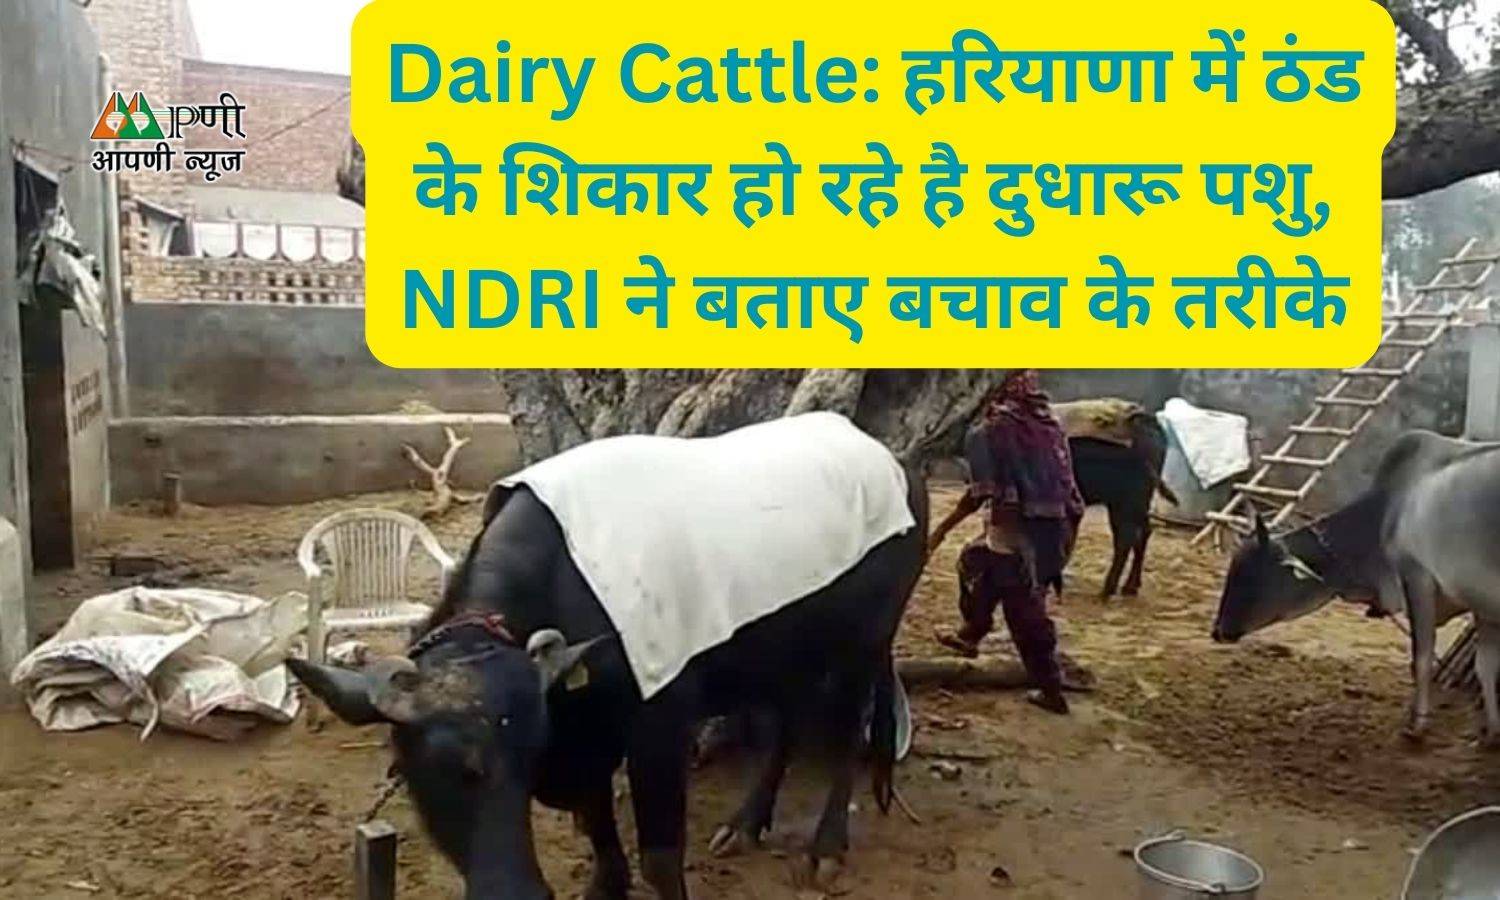 Dairy Cattle: हरियाणा में ठंड के शिकार हो रहे है दुधारू पशु, NDRI ने बताए बचाव के तरीके